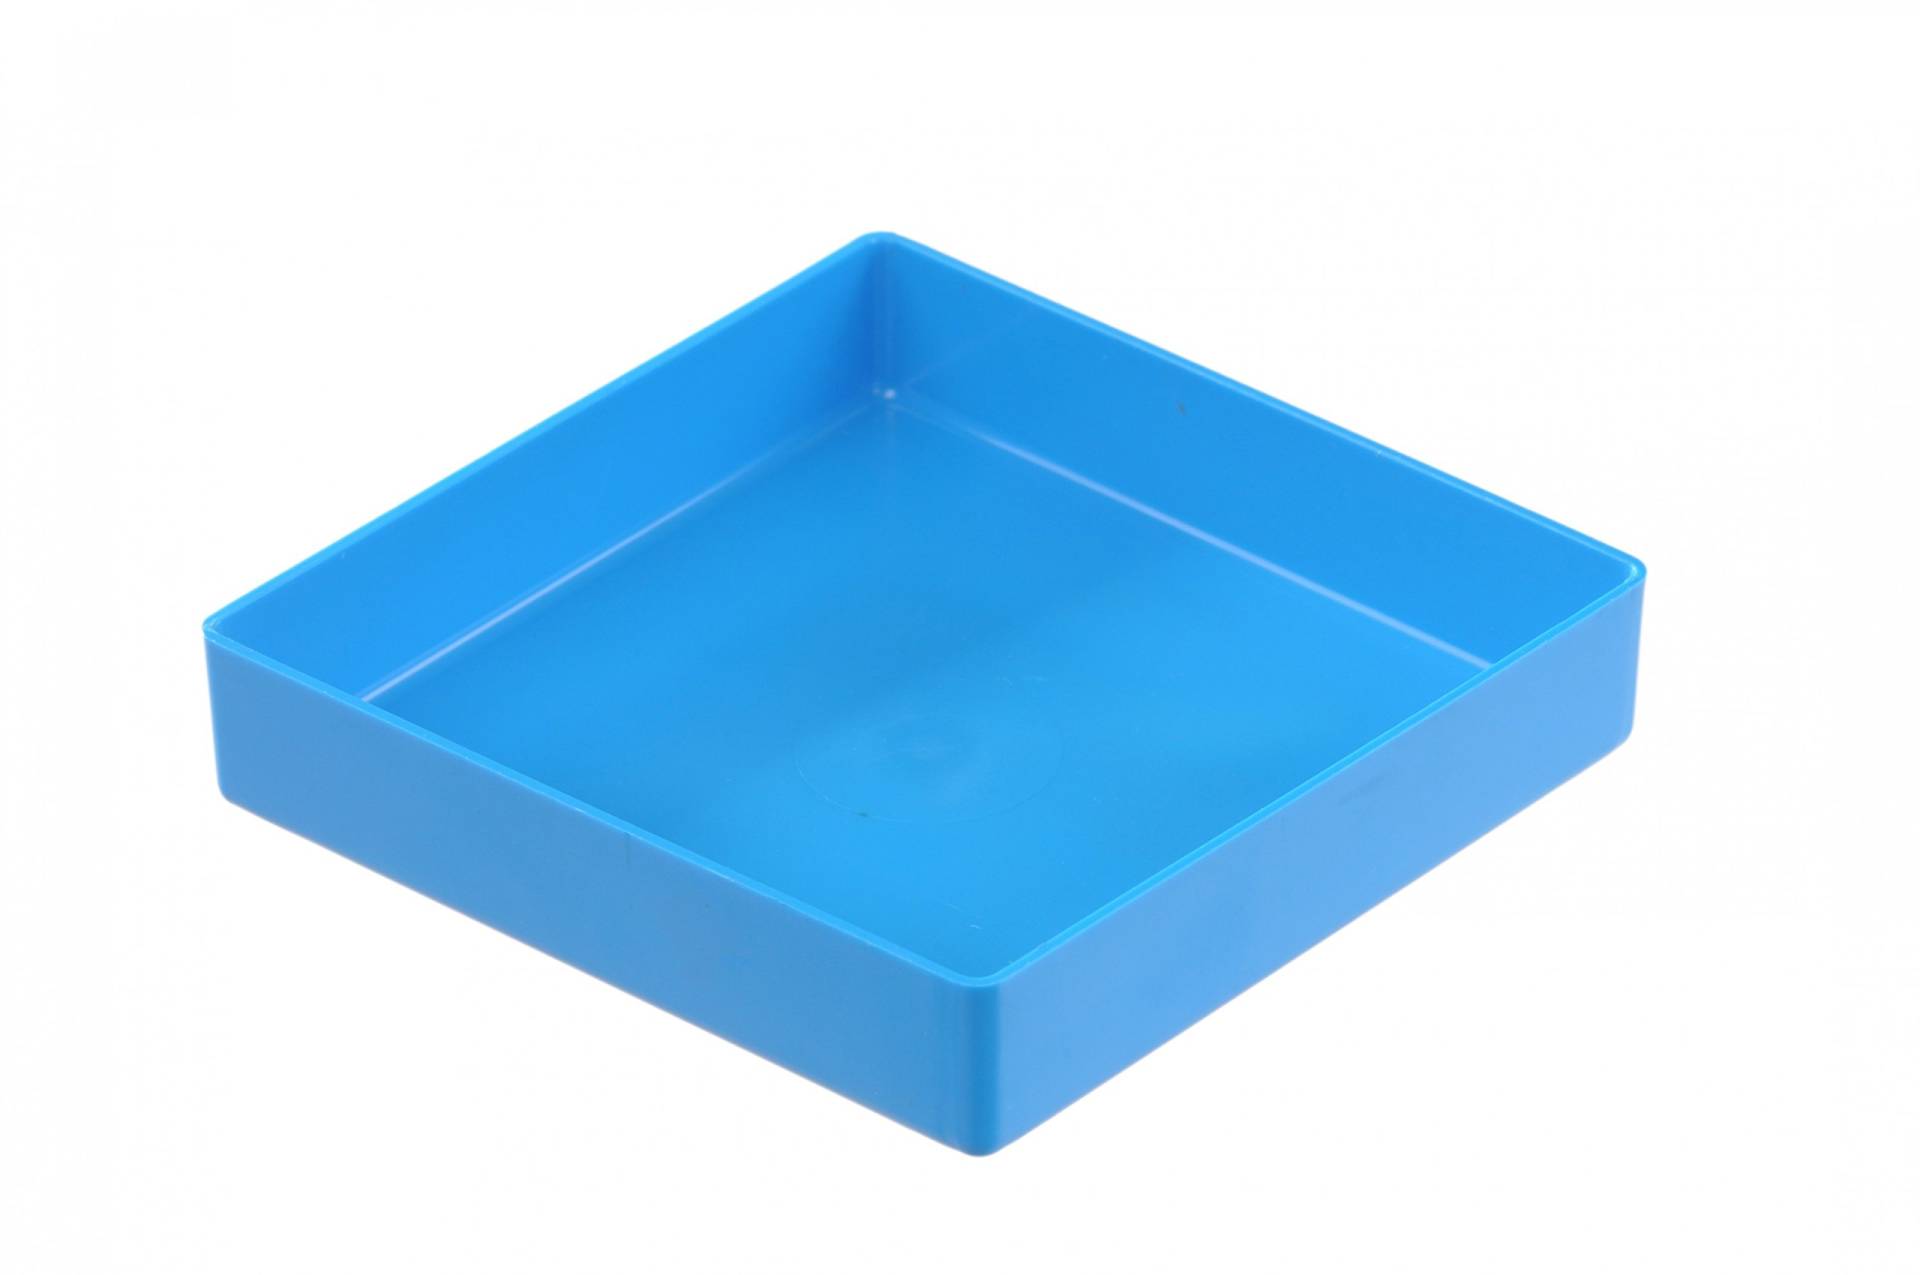 hünersdorff Einsatzbox aus hochschlagfestem Polystyrol (PS), Maße: 108 x 108 x 23 mm, Farbe: blau von hünersdorff